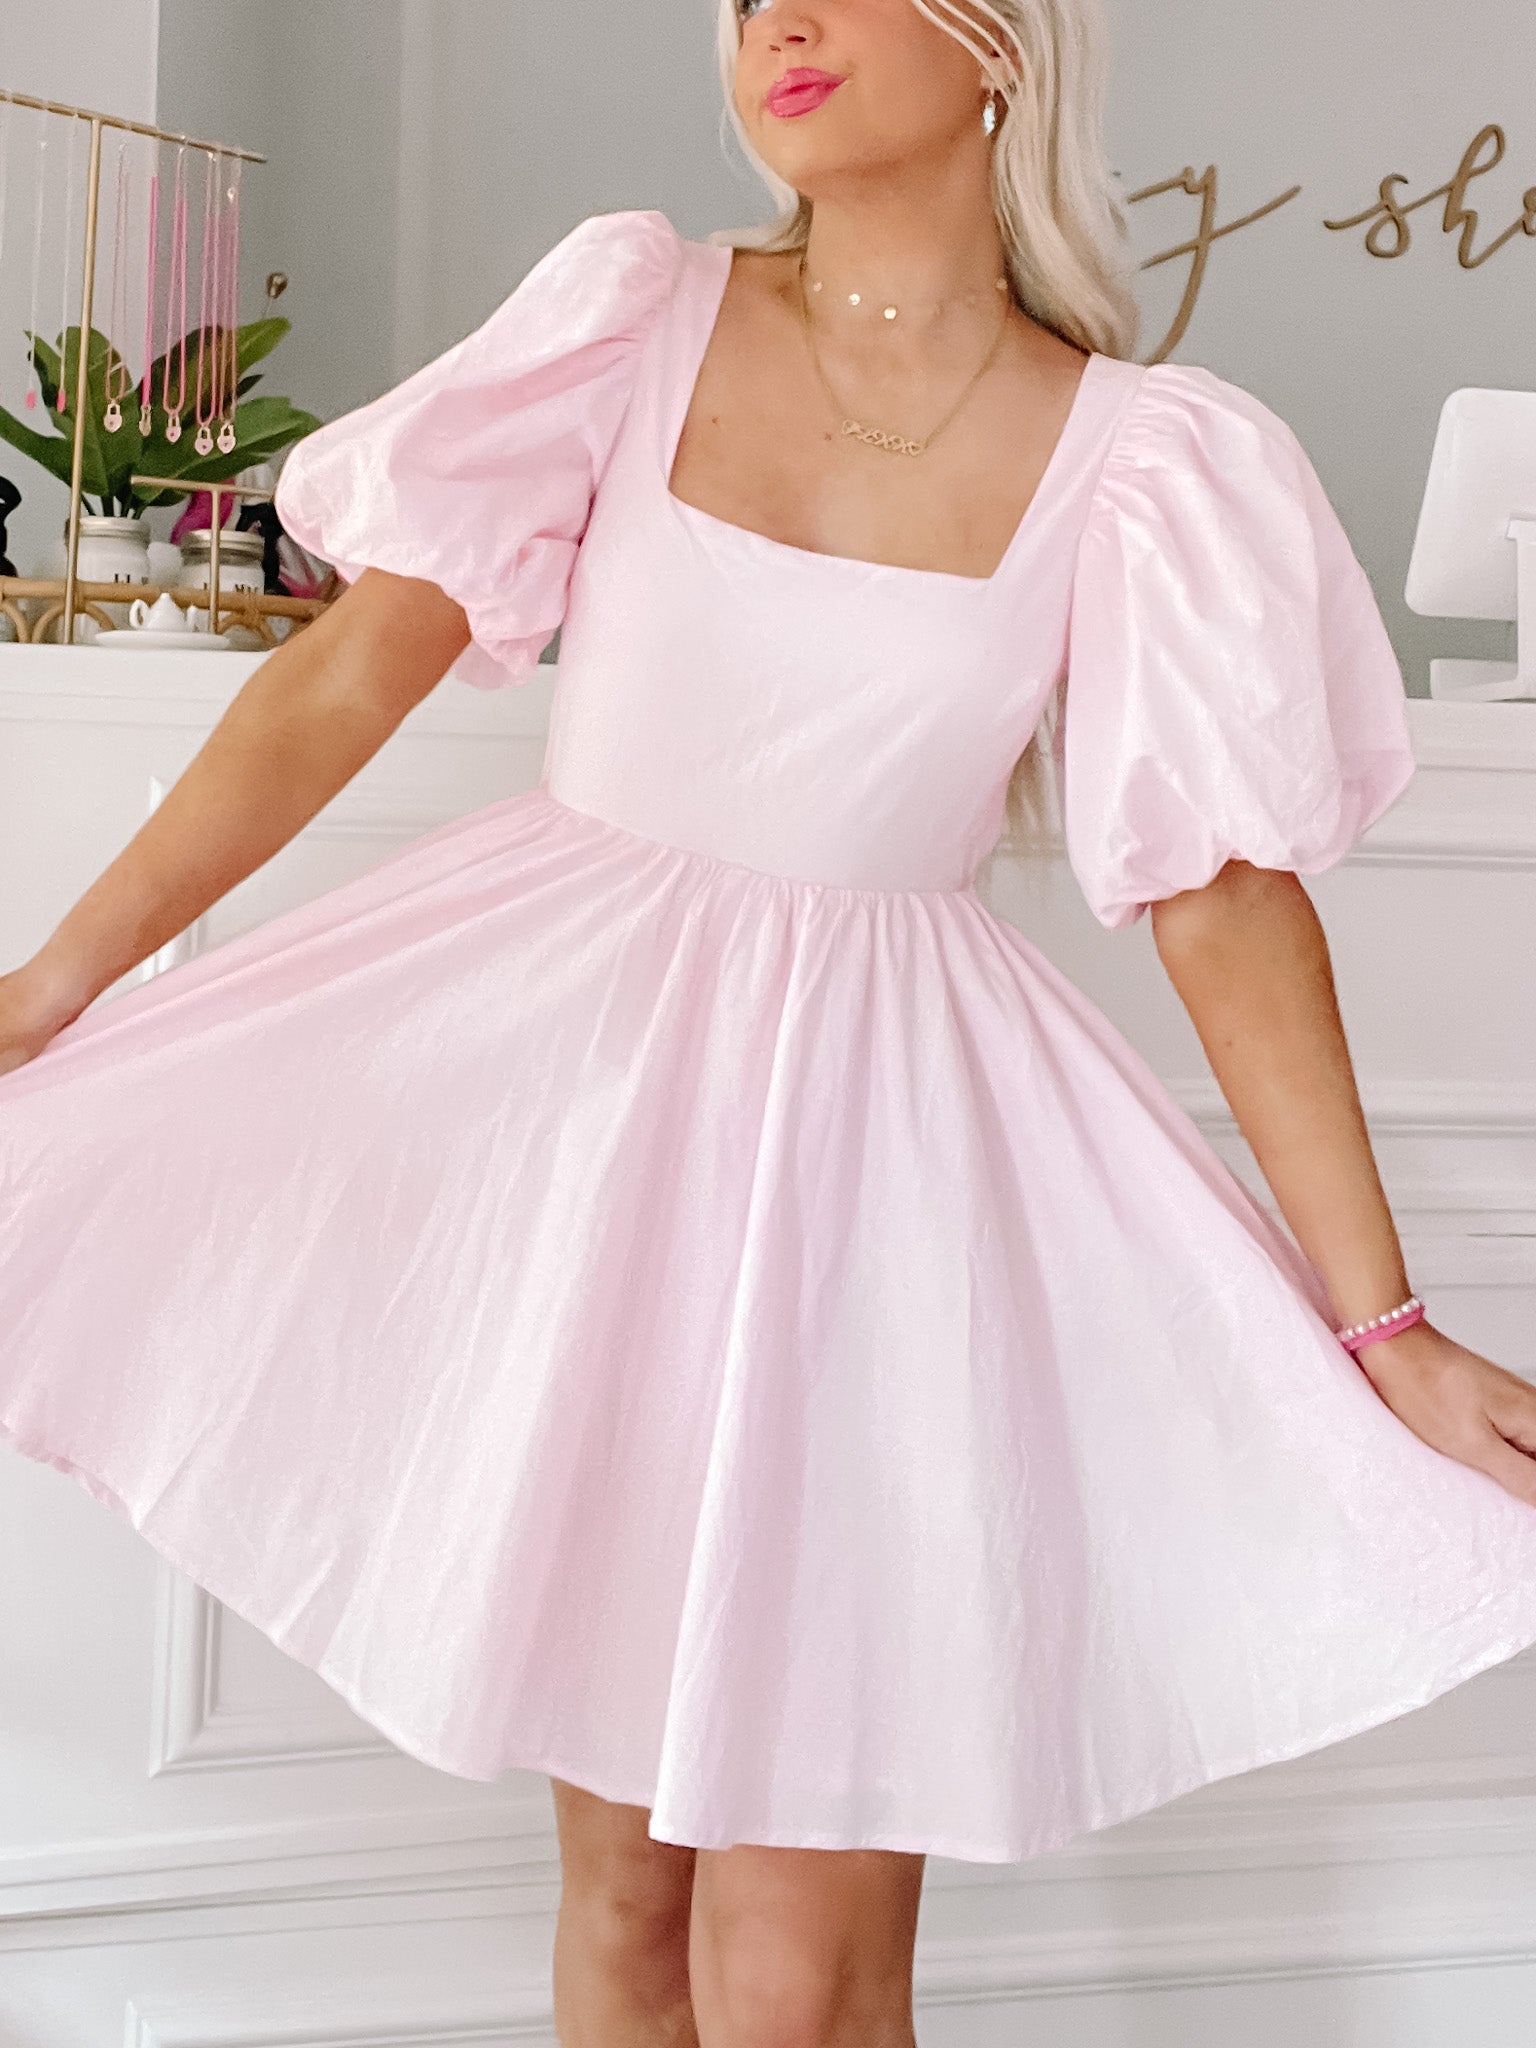 Blush for Brunch Preppy Pink Dress | sassyshortcake.com | Sassy Shortcake